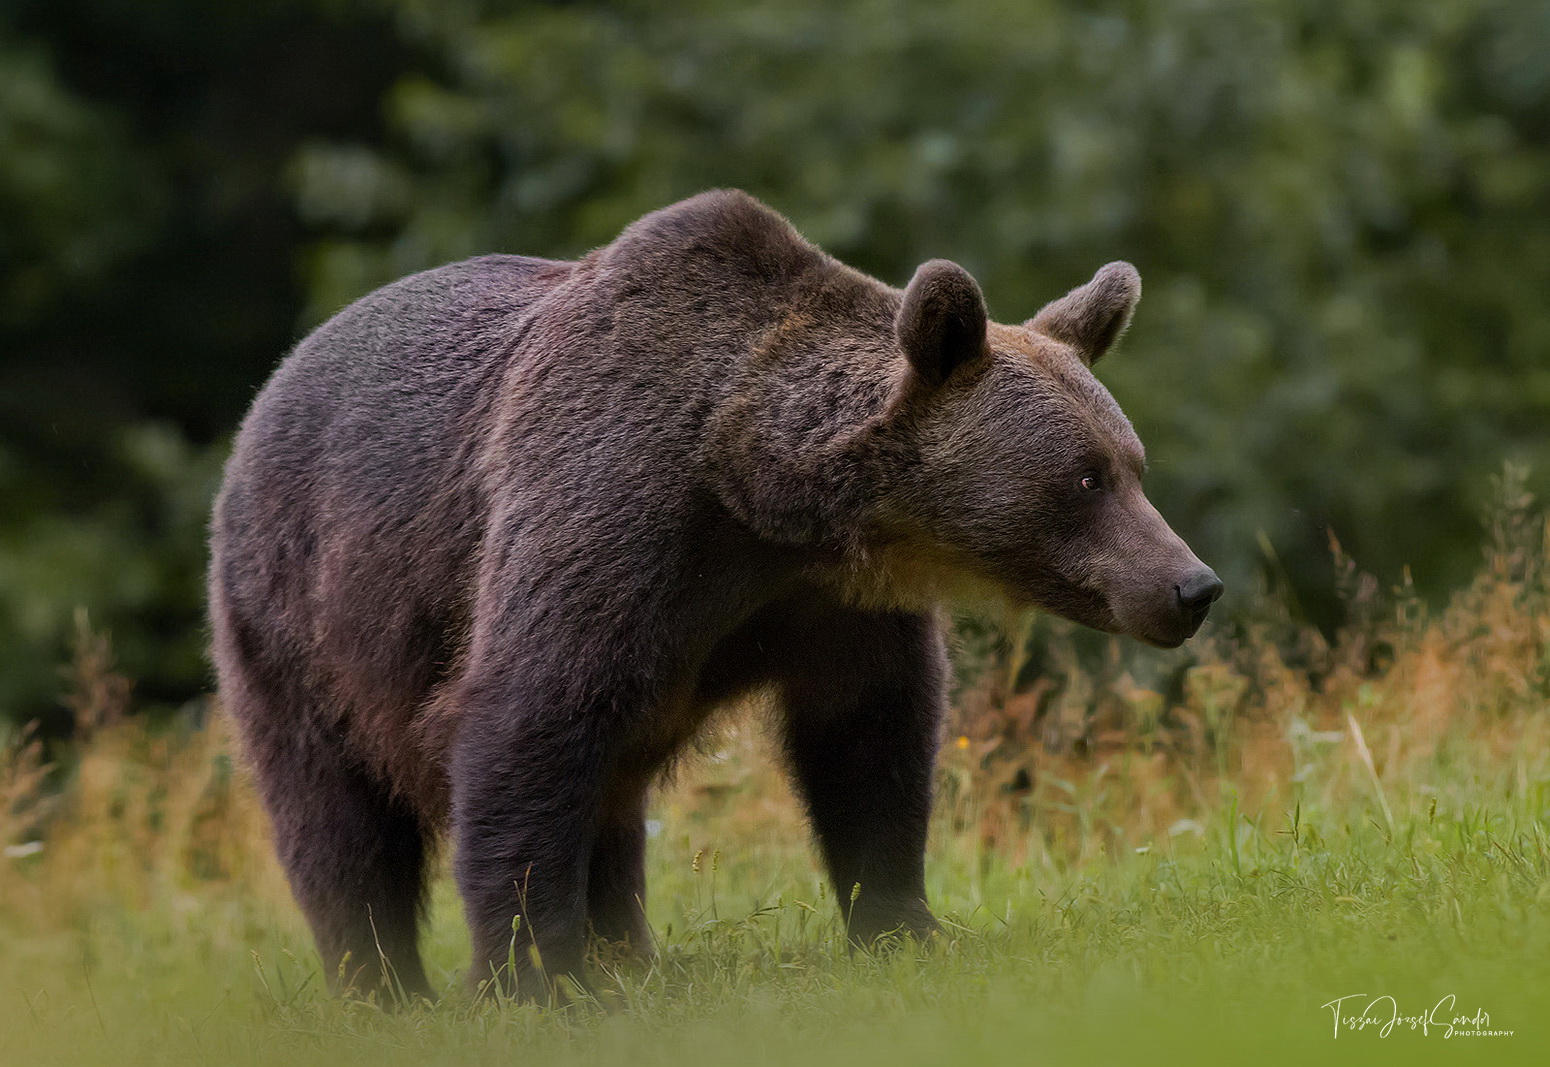 Nyolc medvét jelentettek egy nap alatt Tusnádfürdőn